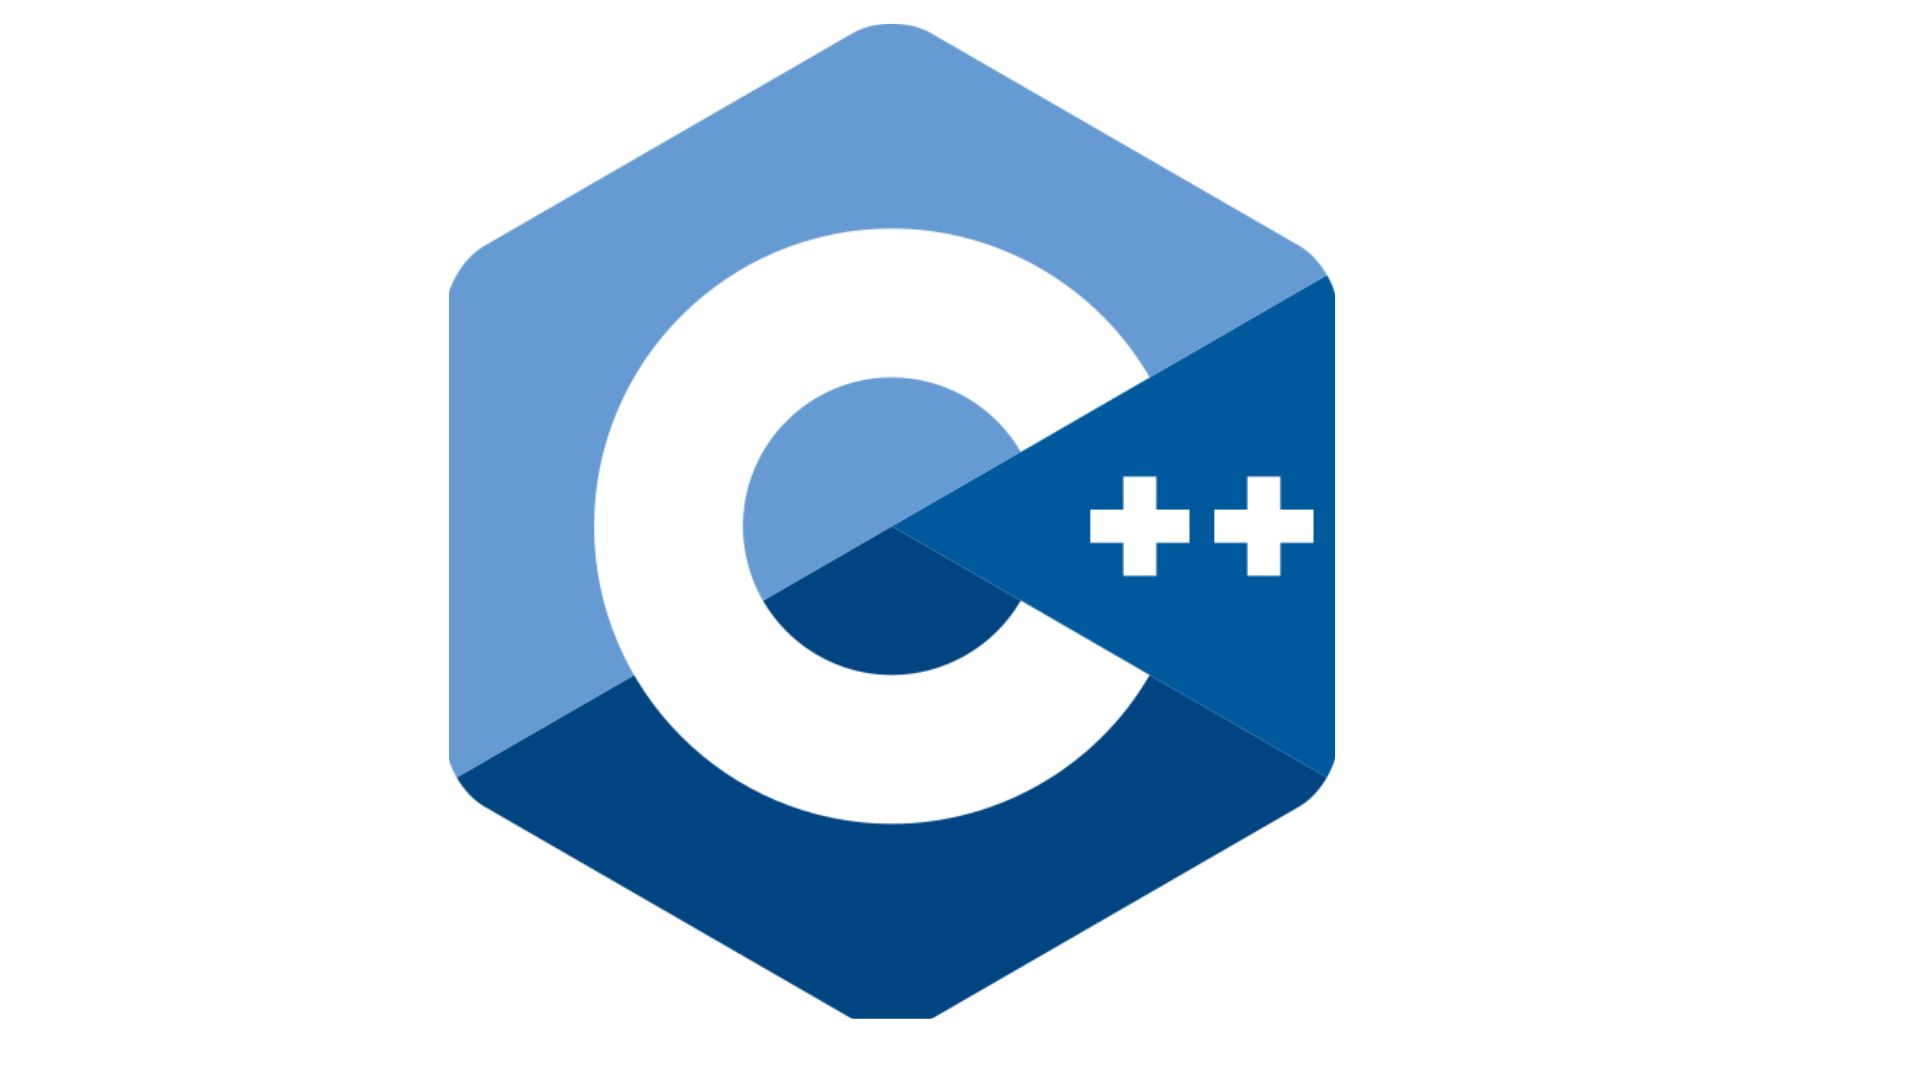 ++C logo